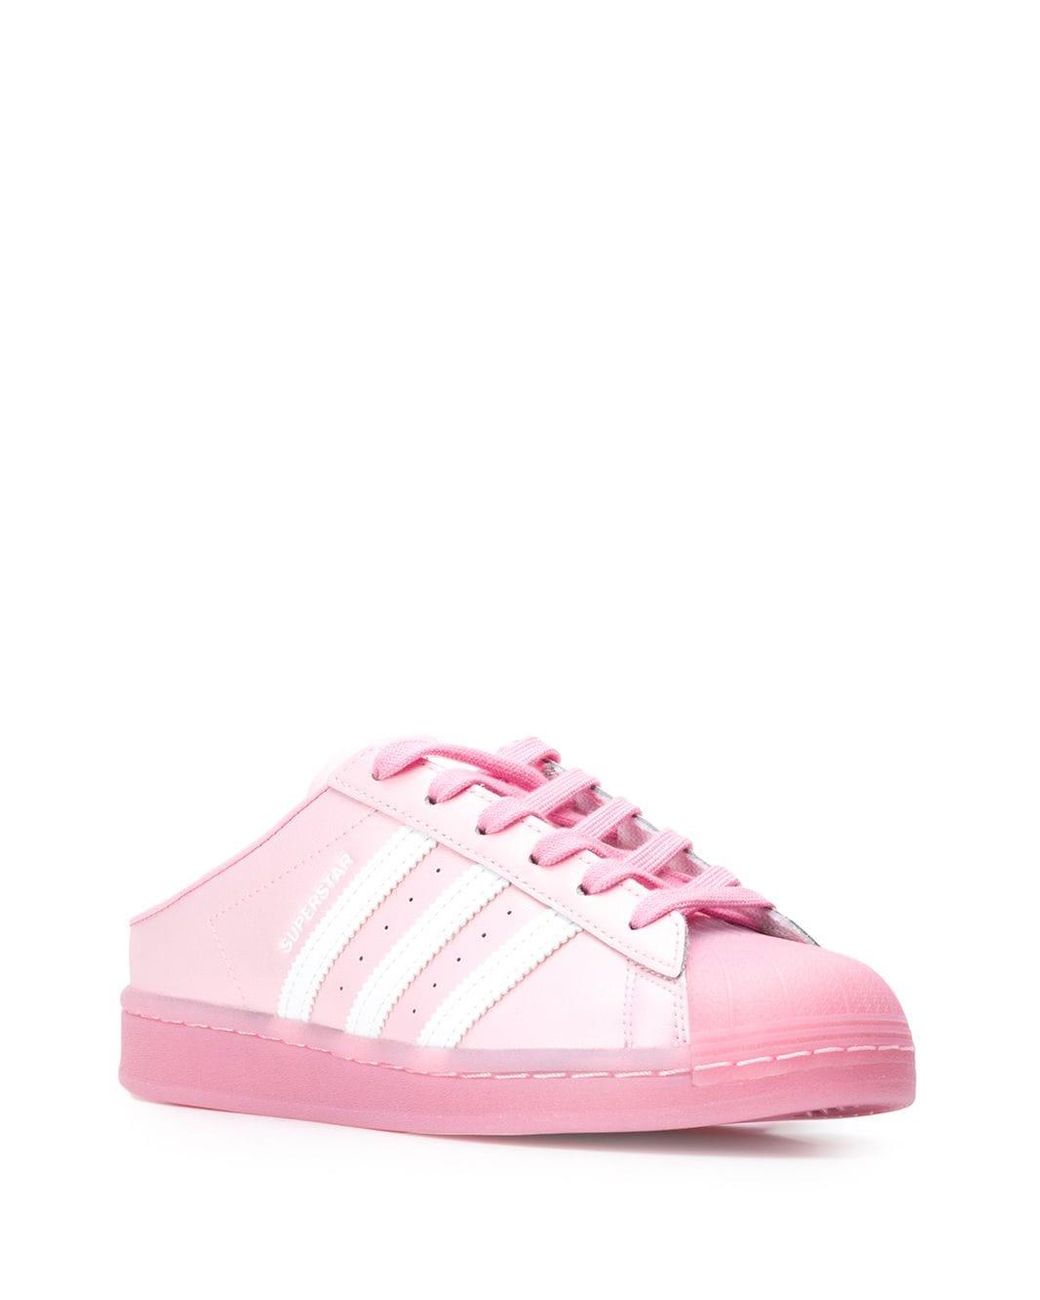 adidas Superstar Mule Sneakers in Pink | Lyst Australia